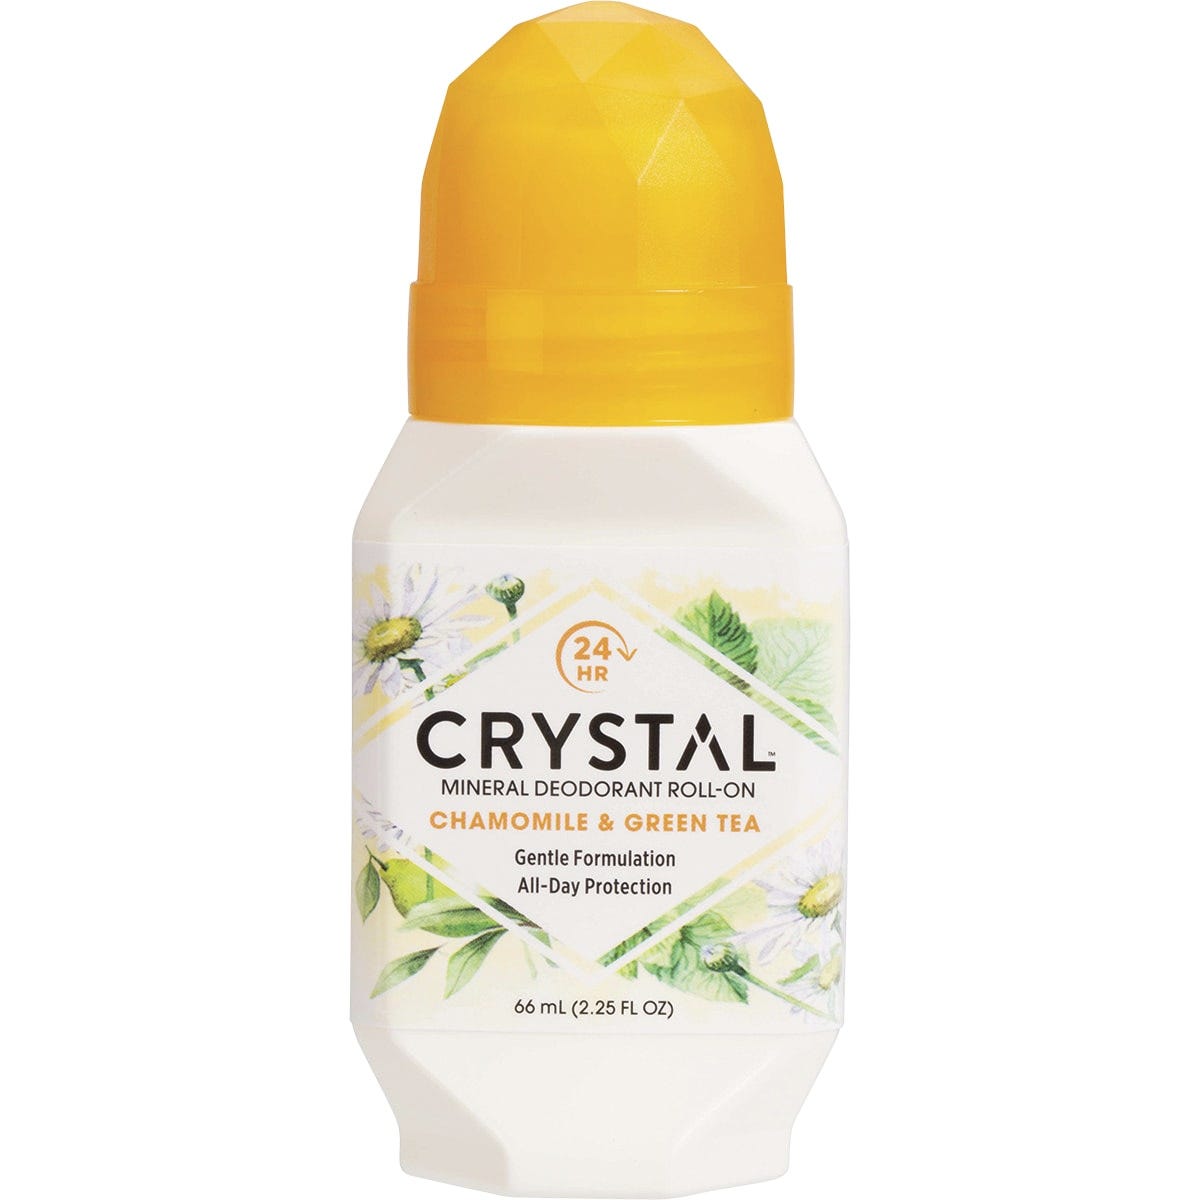 Crystal Roll-On Deodorant Chamomile & Green Tea 66ml - Dr Earth - Bath & Body